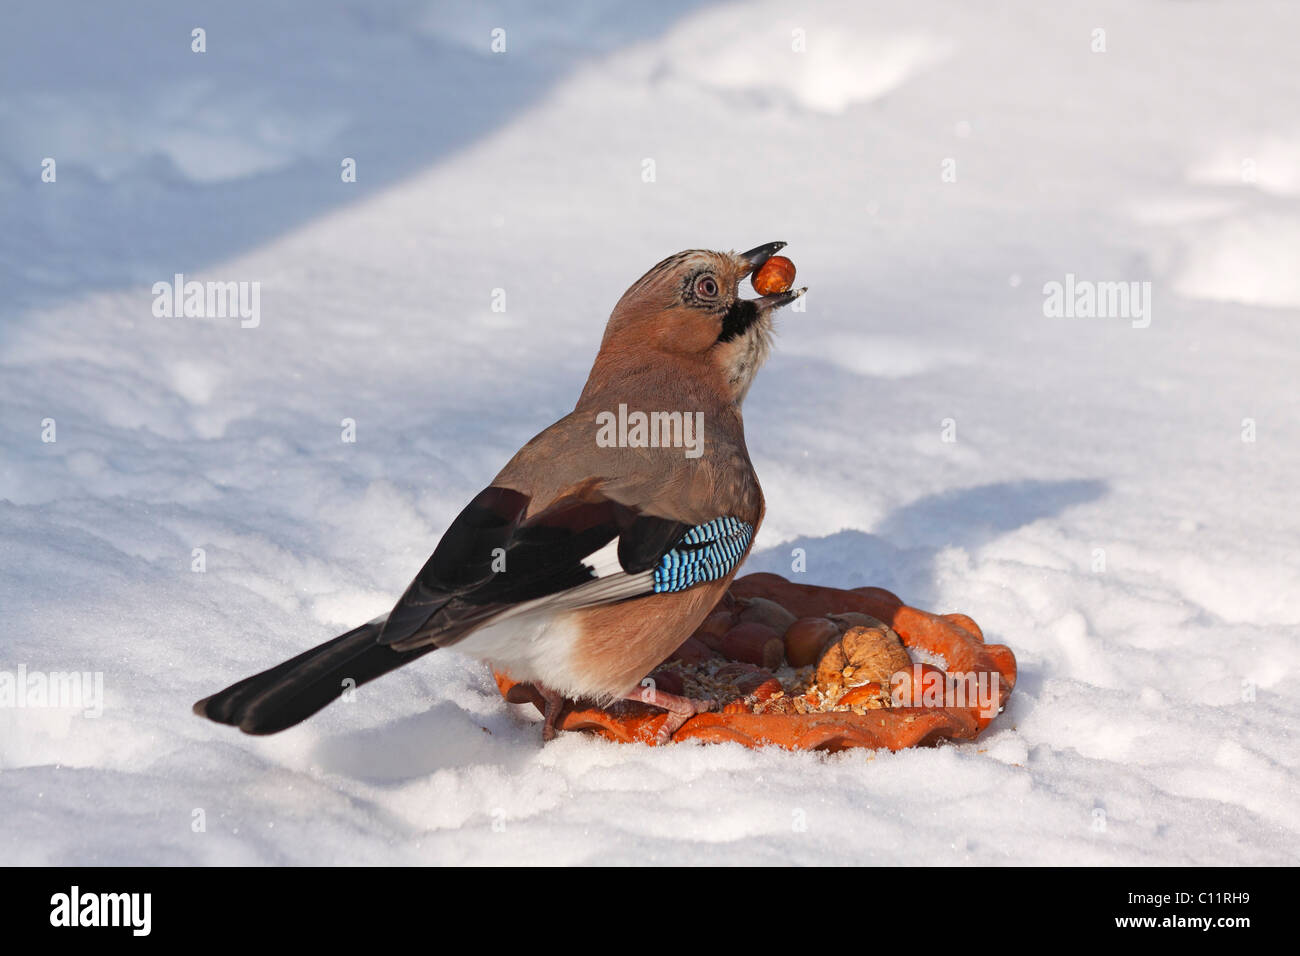 Jay (Garrulus glandarius) avec une noisette dans son bec d'un site d'alimentation des oiseaux en hiver dans la neige Banque D'Images